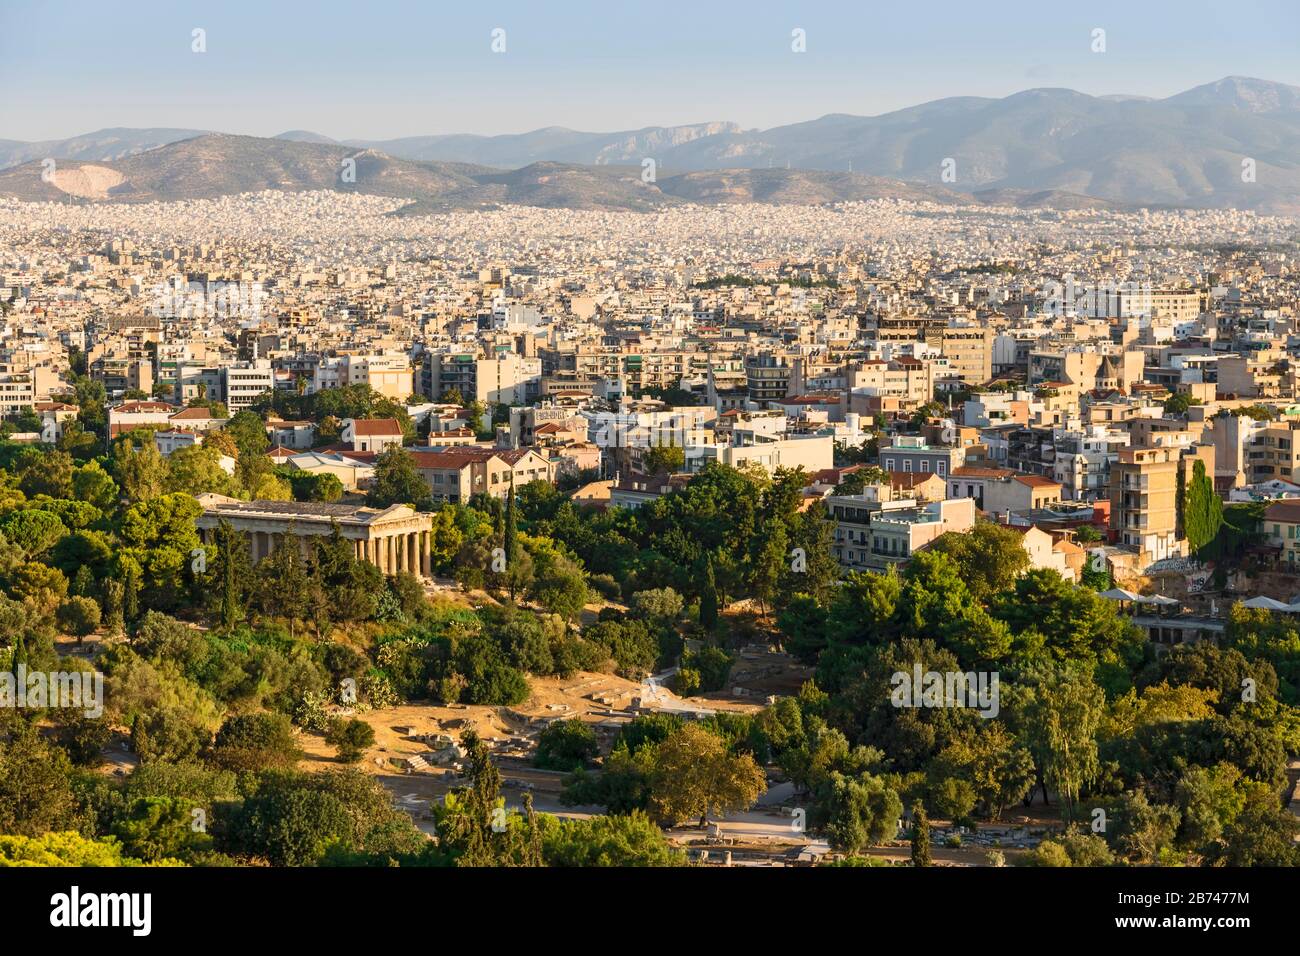 Blick auf Athen von der Akropolis. Berühmte Orte in Athen - Hauptstadt Griechenlands. Antike Denkmäler. Stockfoto